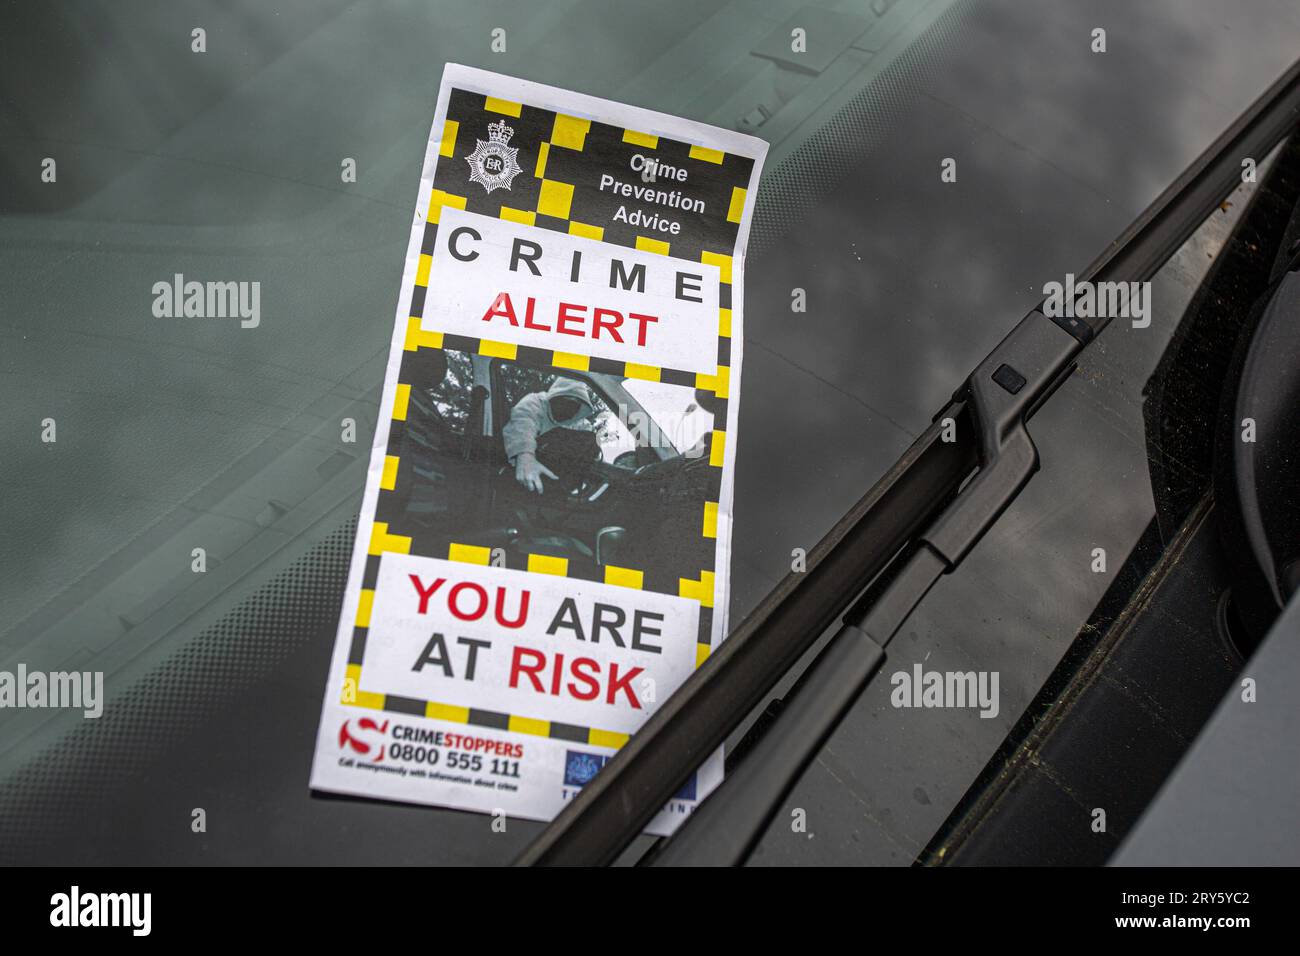 Consigli di prevenzione del crimine da parte della polizia . Volantino su parabrezza Crime Alert You Are Are Risk , Londra , Regno Unito. Foto Stock